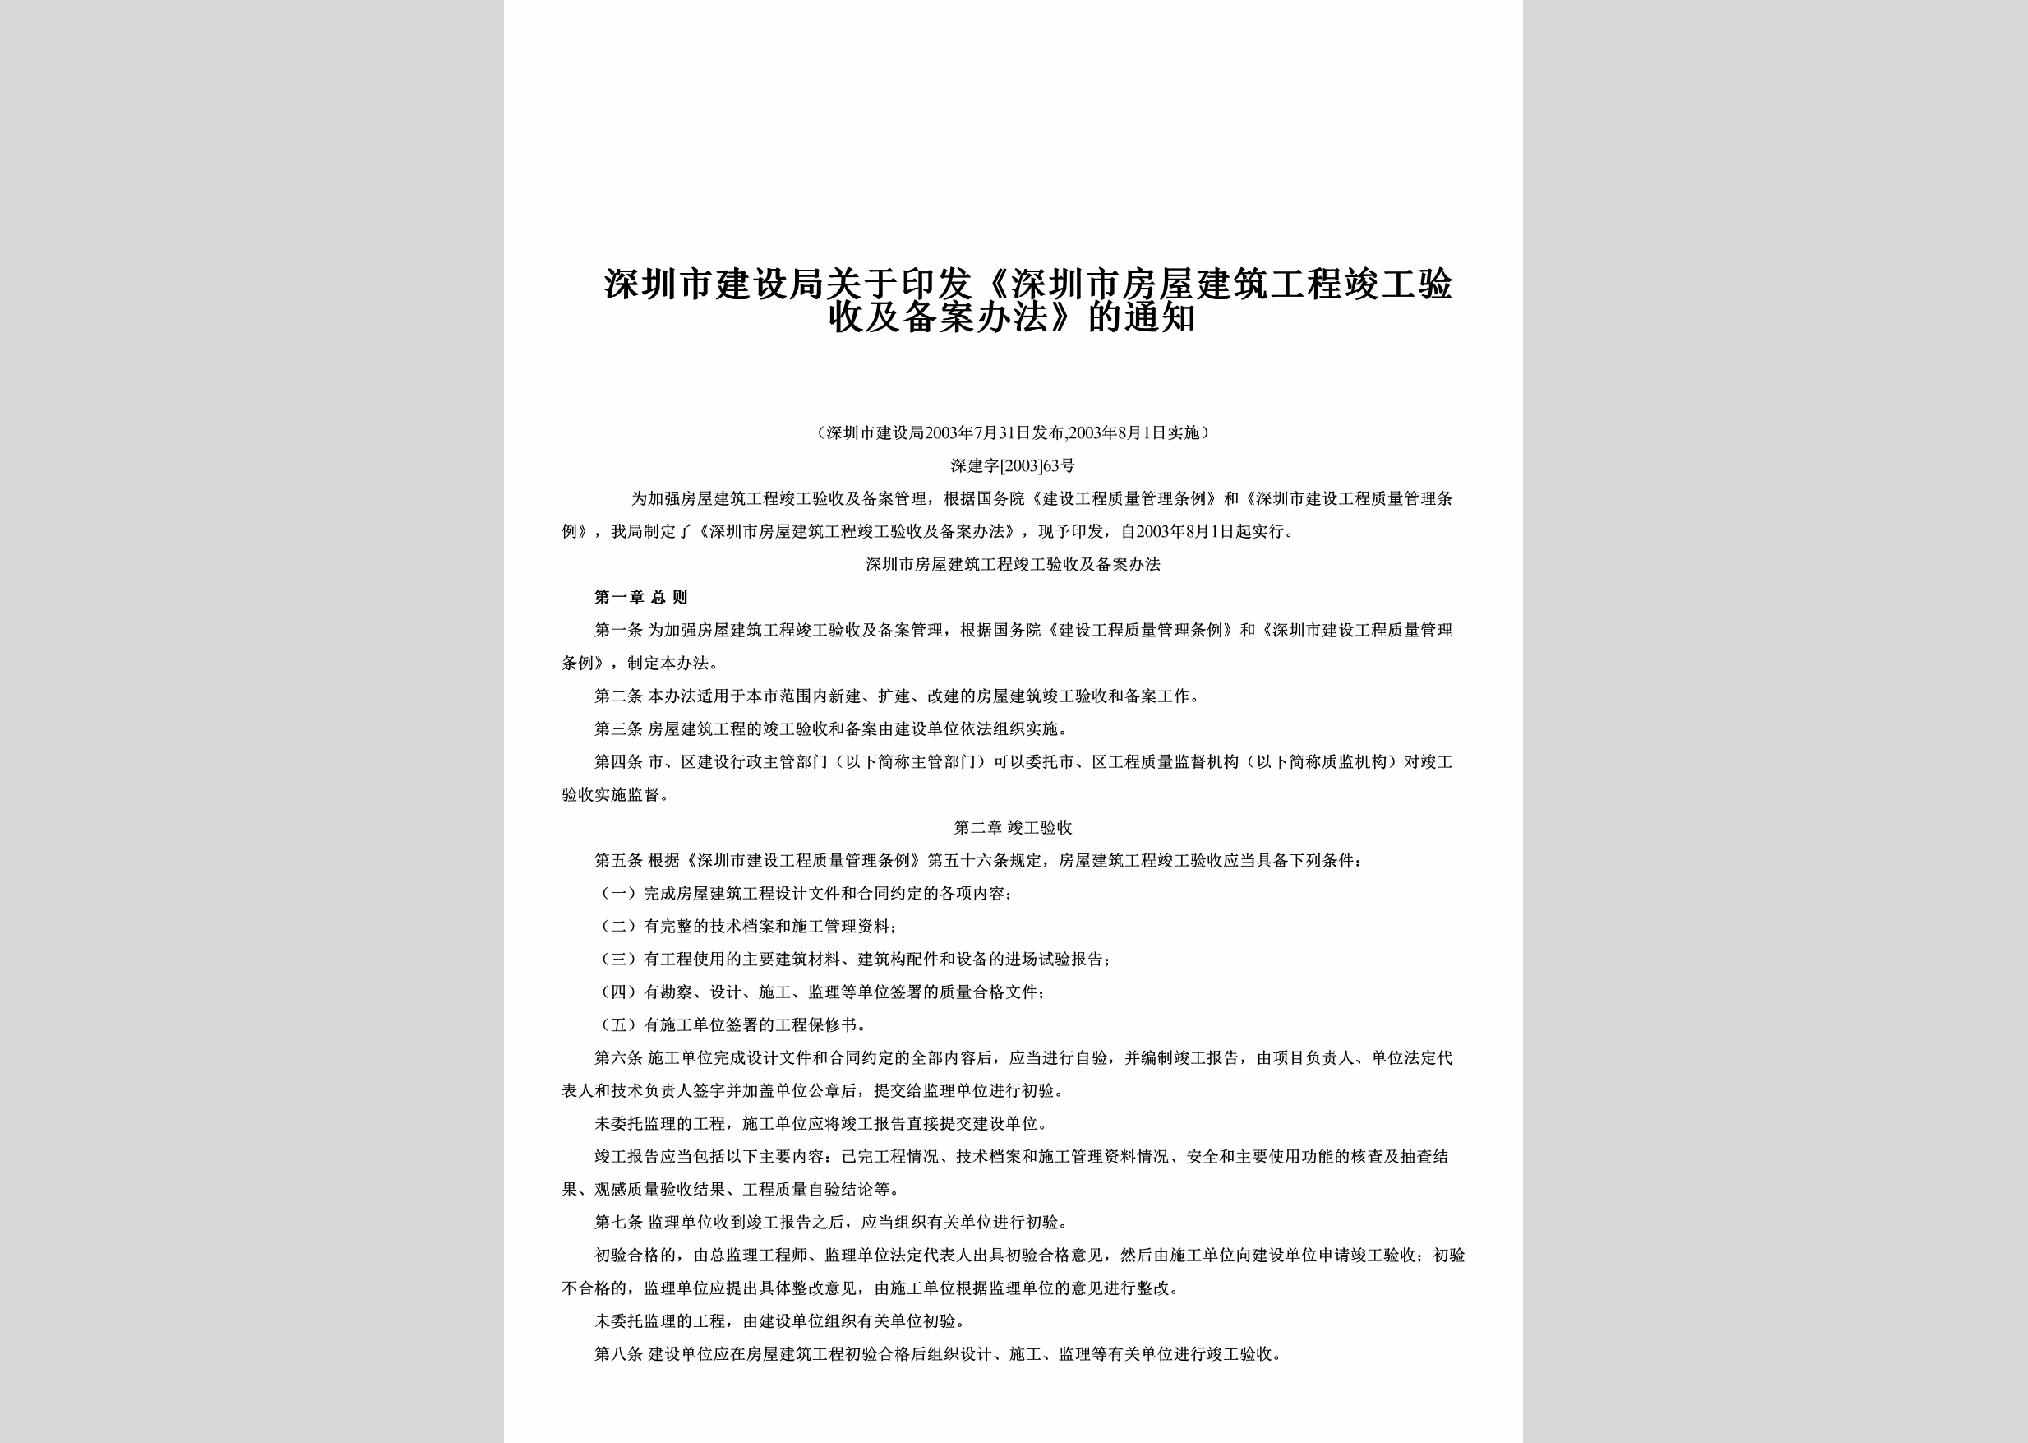 深建字[2003]63号：关于印发《深圳市房屋建筑工程竣工验收及备案办法》的通知